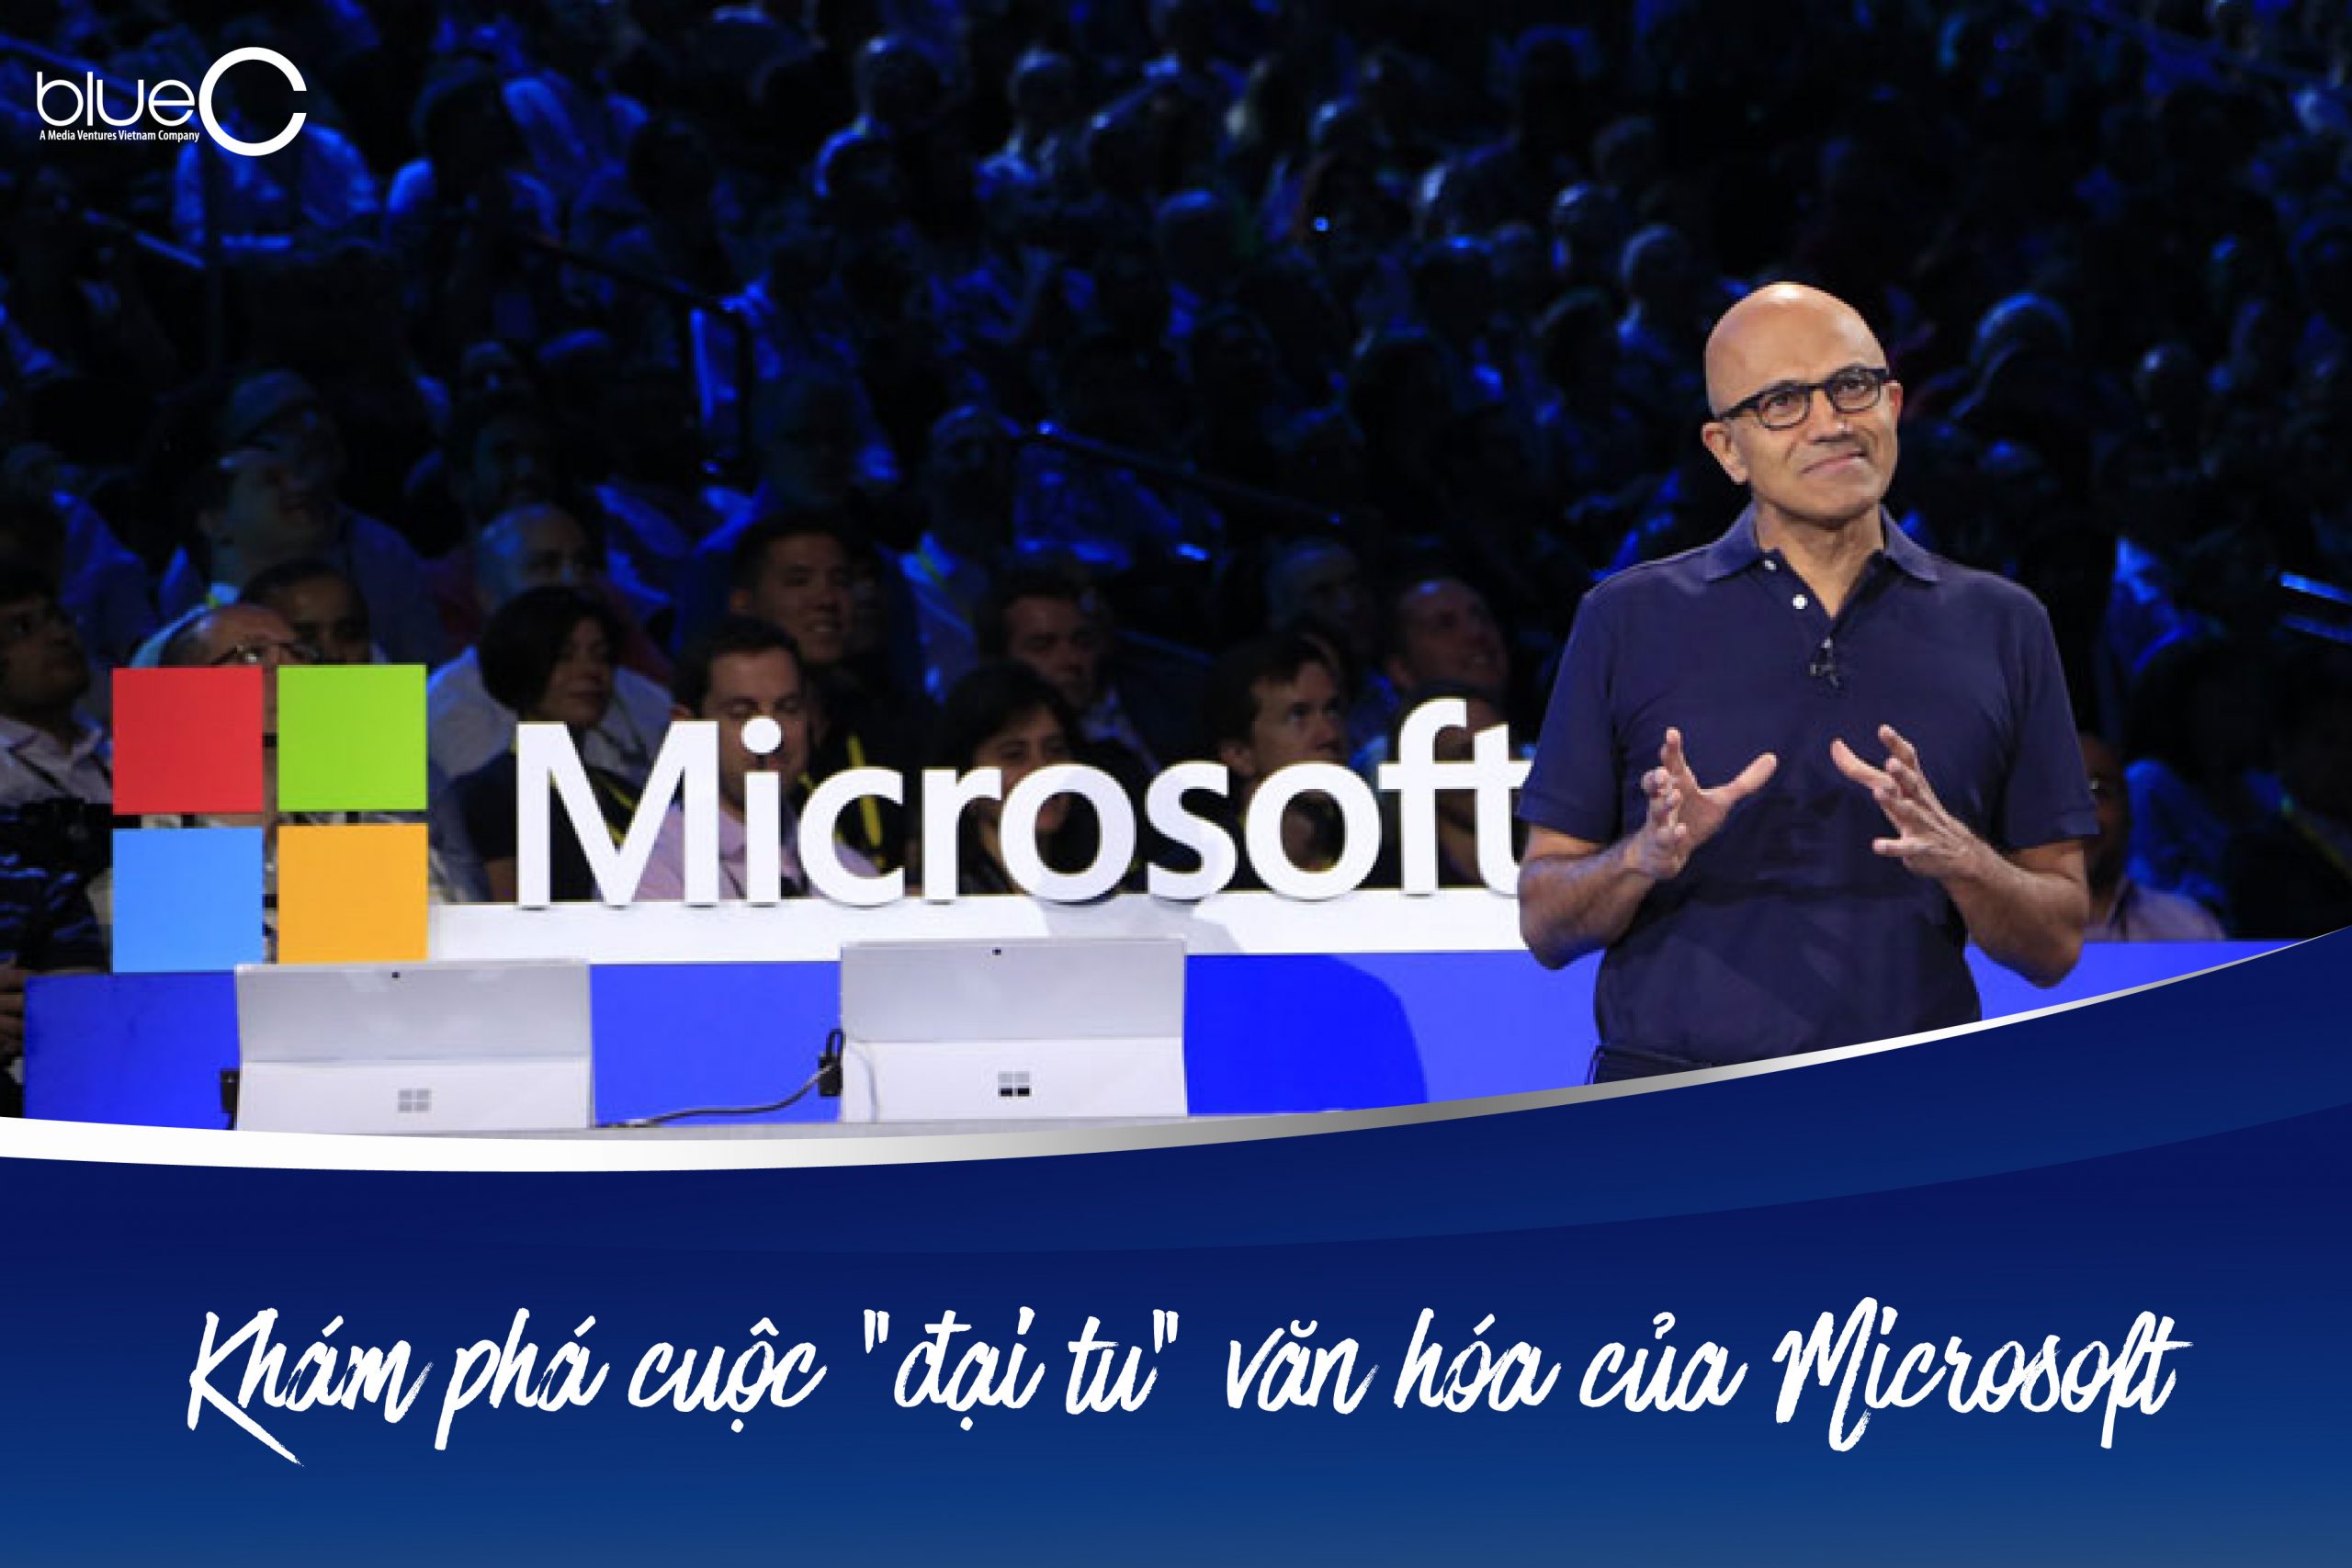 Khám phá cuộc “đại tu” văn hóa của Microsoft